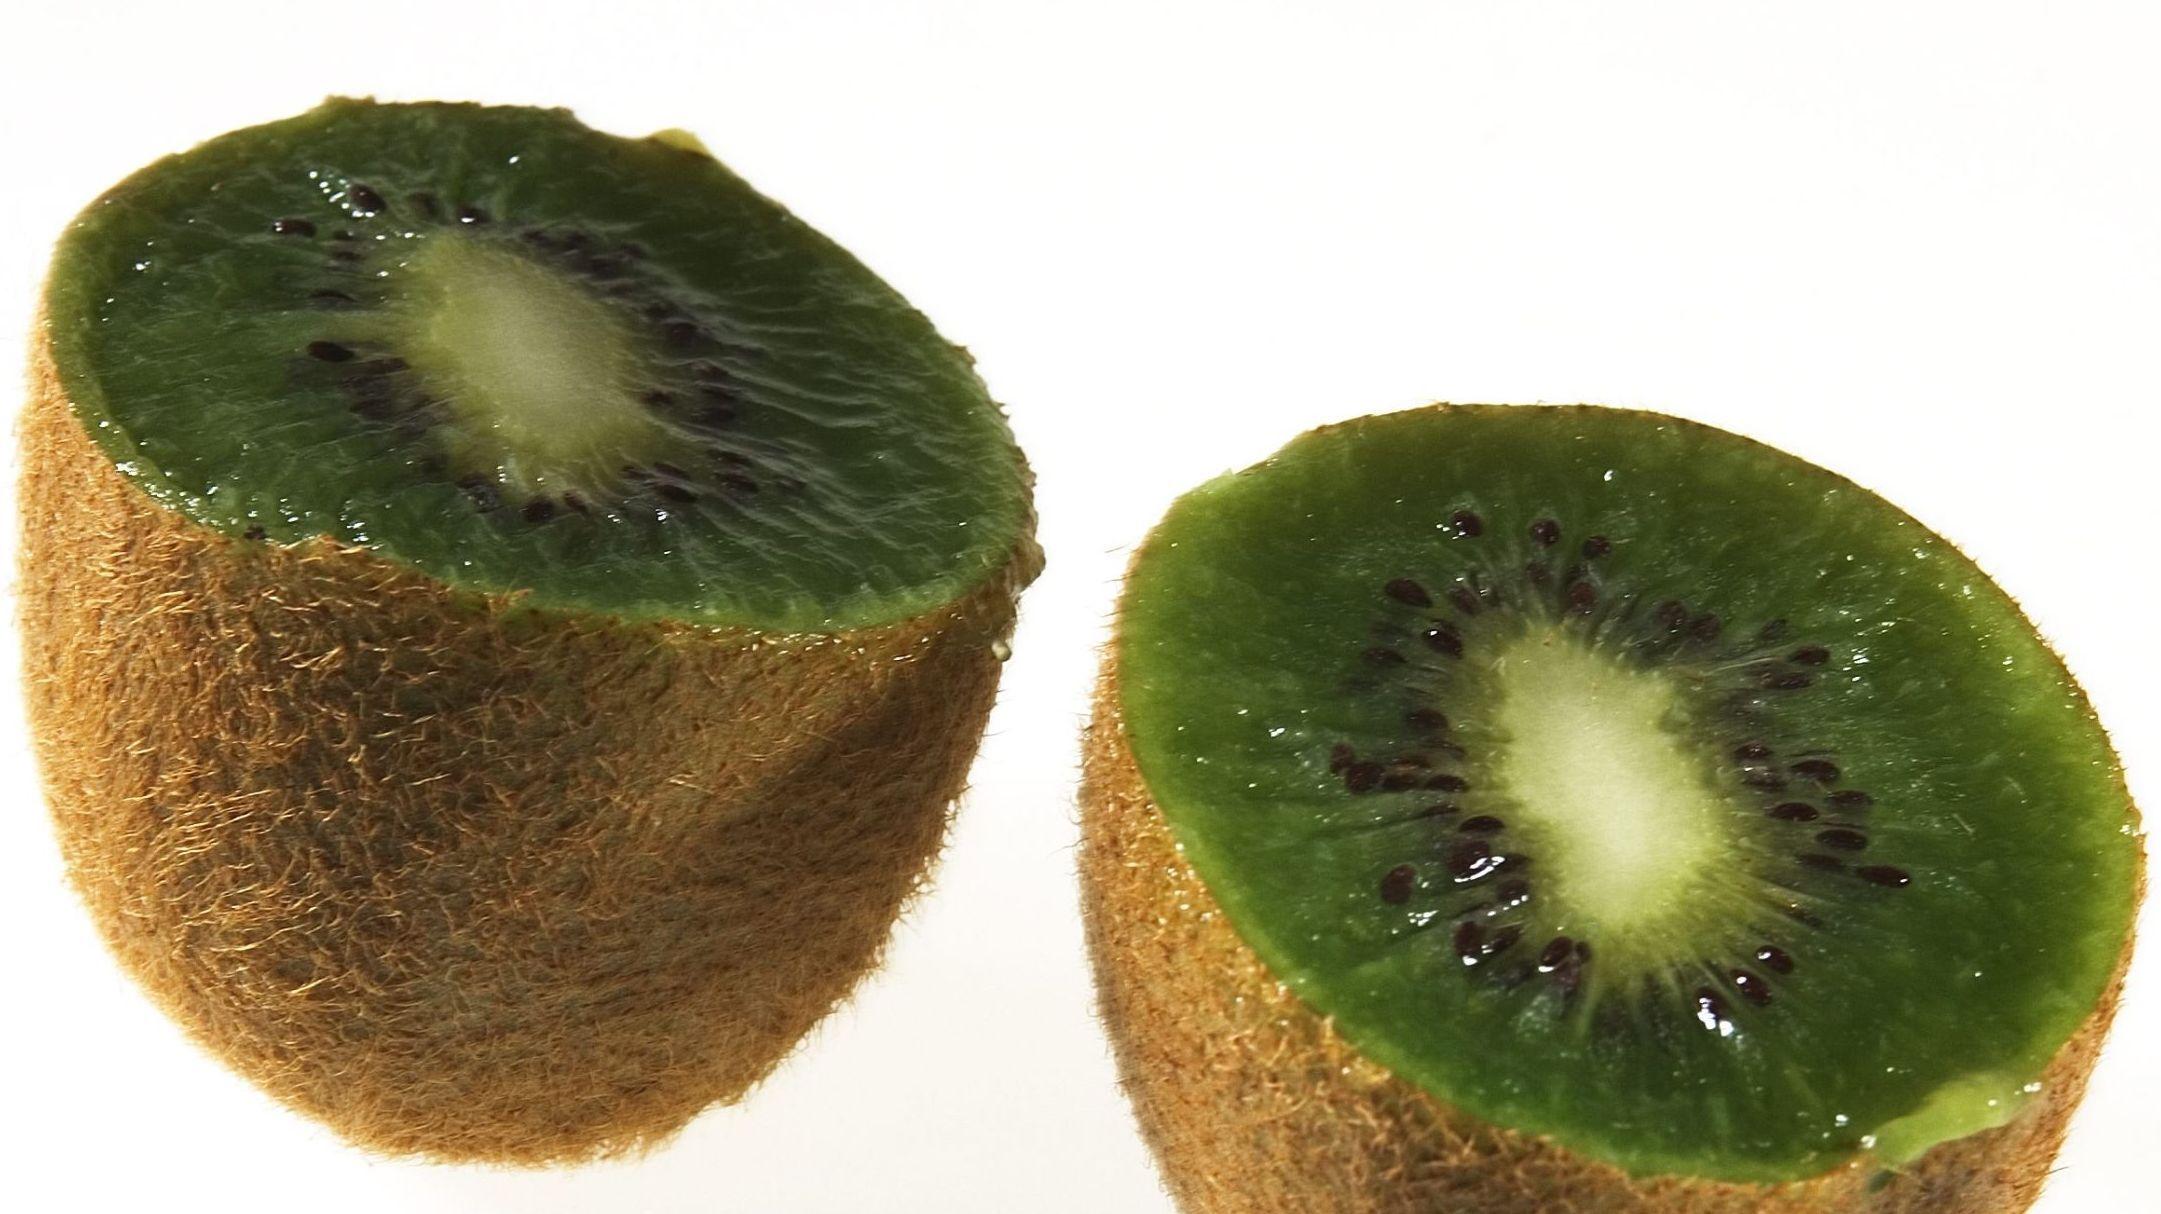 SUPERFRUKT: Den loddete frukten kan gjøre deg både vakrere og sunnere. Foto: Magnar Kirknes/VG